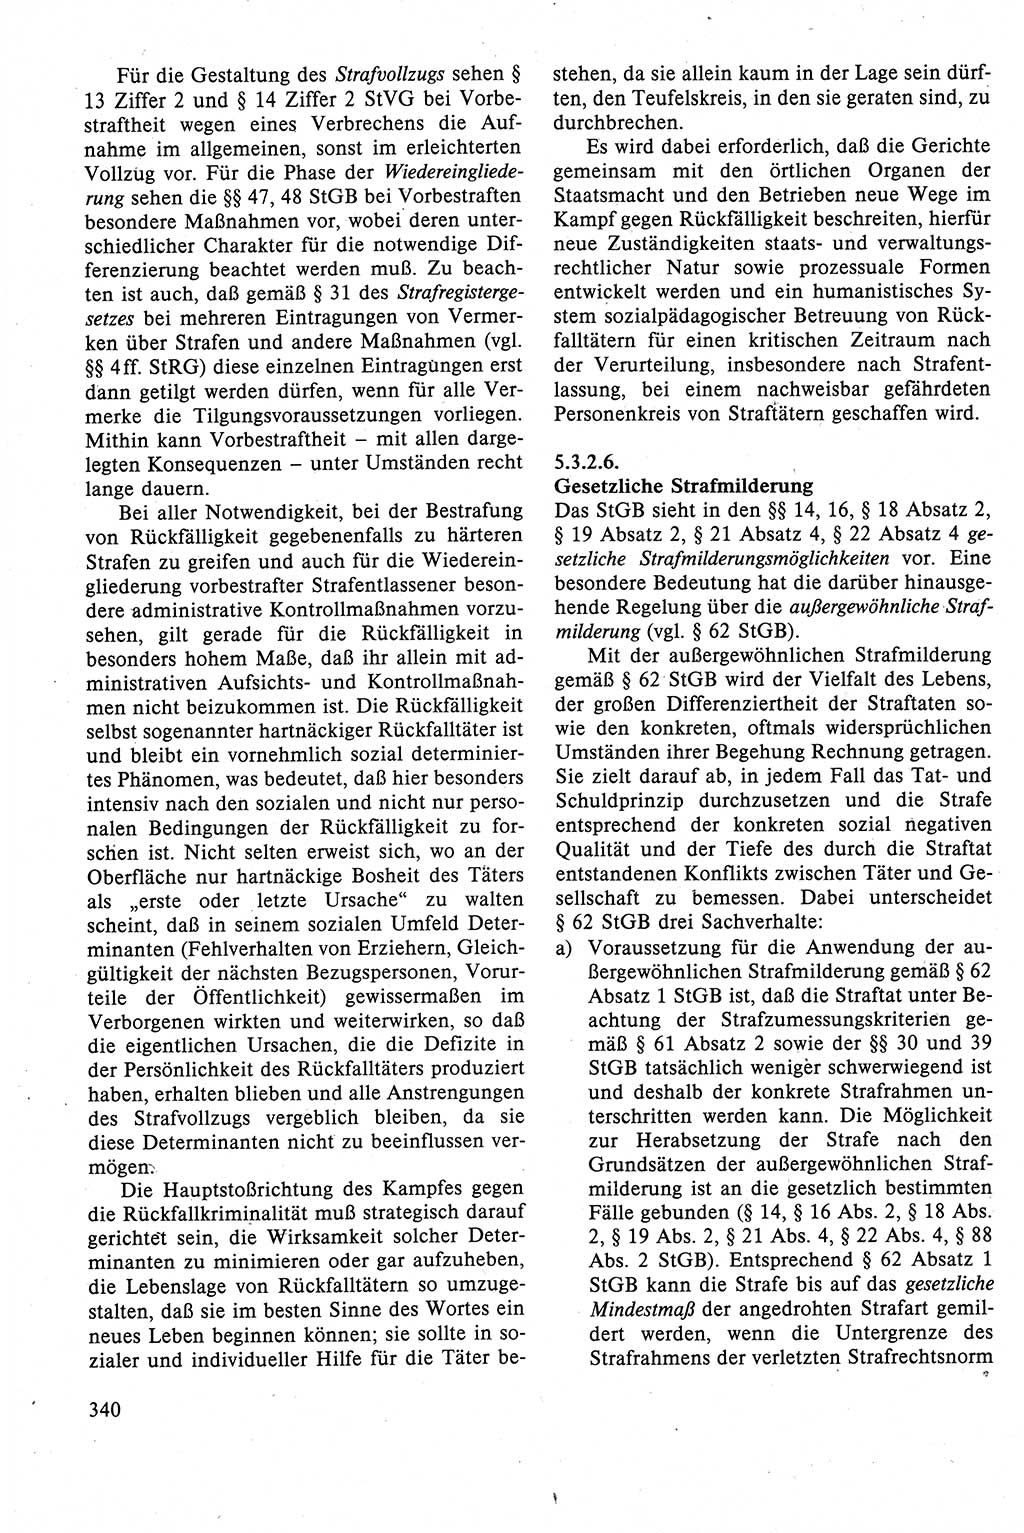 Strafrecht der DDR (Deutsche Demokratische Republik), Lehrbuch 1988, Seite 340 (Strafr. DDR Lb. 1988, S. 340)